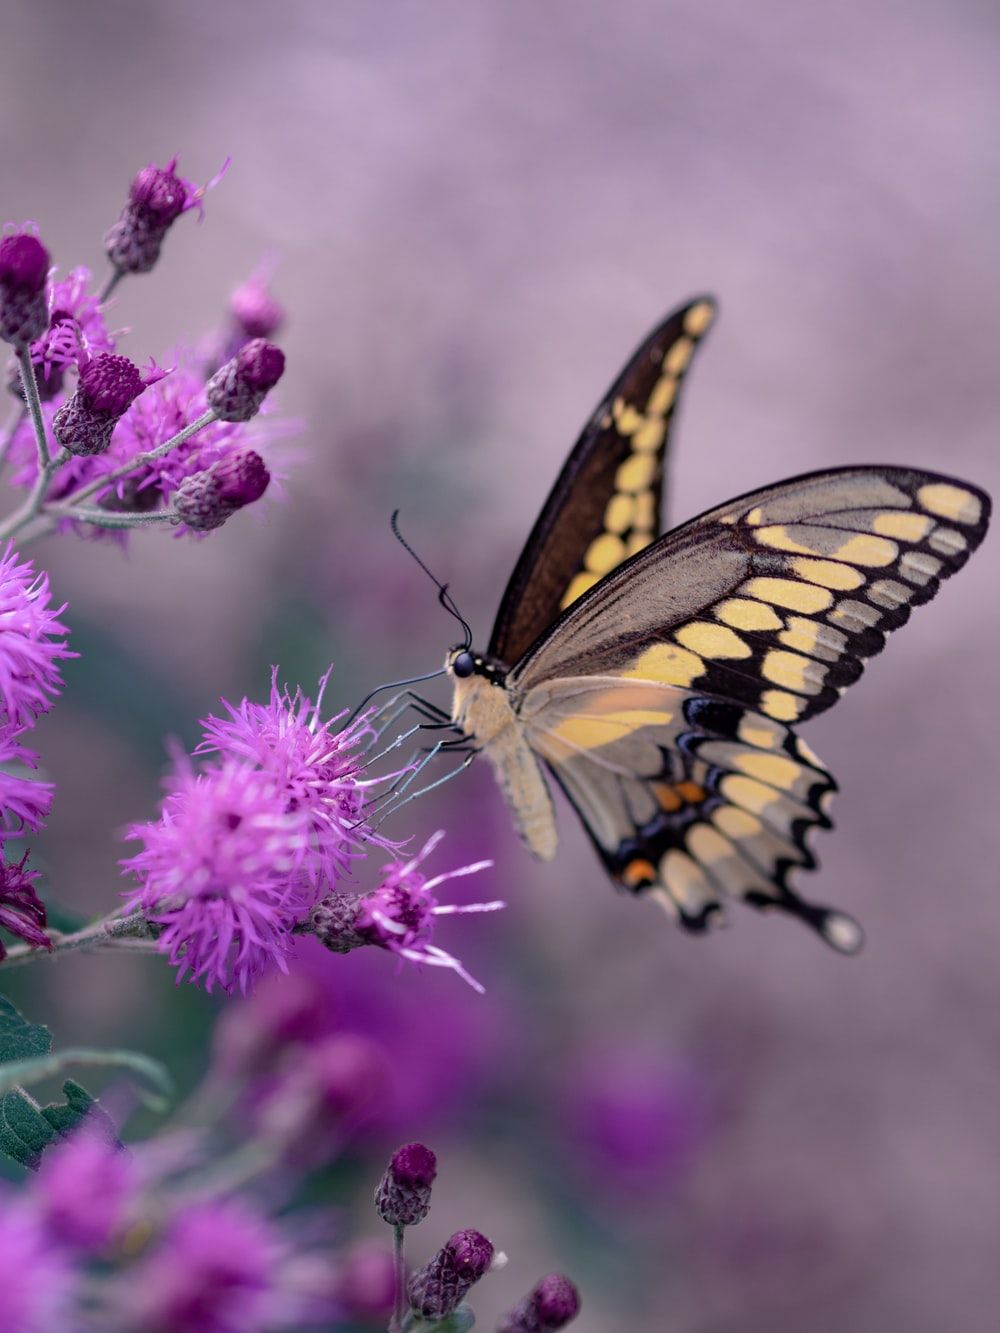 Más de 100 fotos de mariposas [HQ] | Descargar imágenes gratis